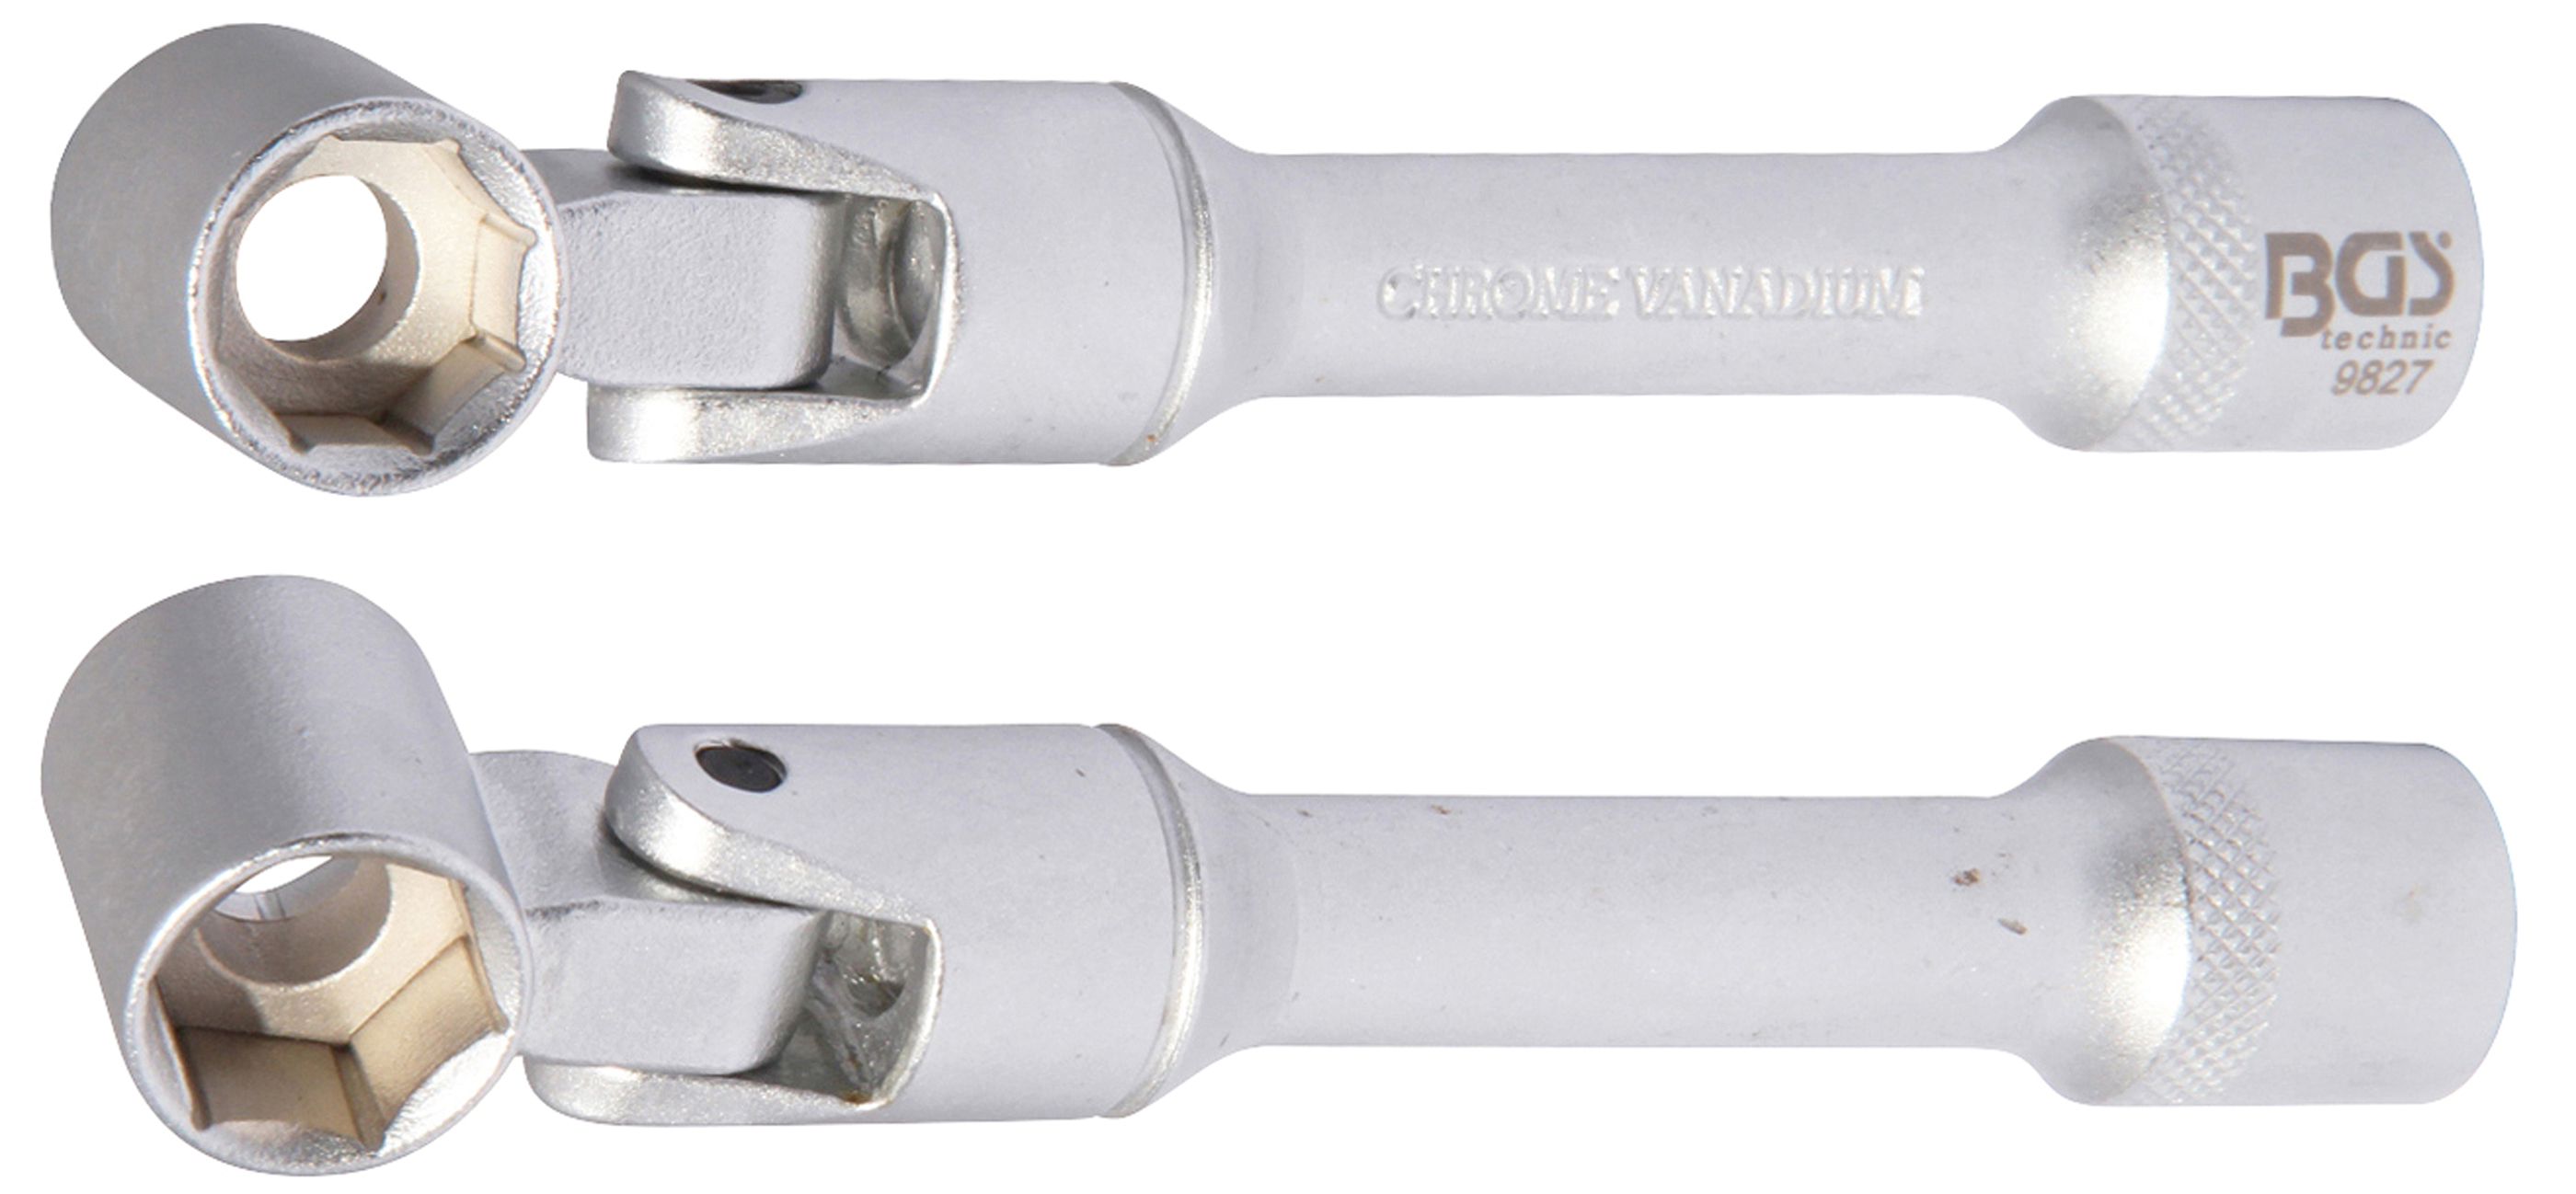 BGS 9827 Cap cheie articulat jambă suspensie pentru VAG, 14 mm